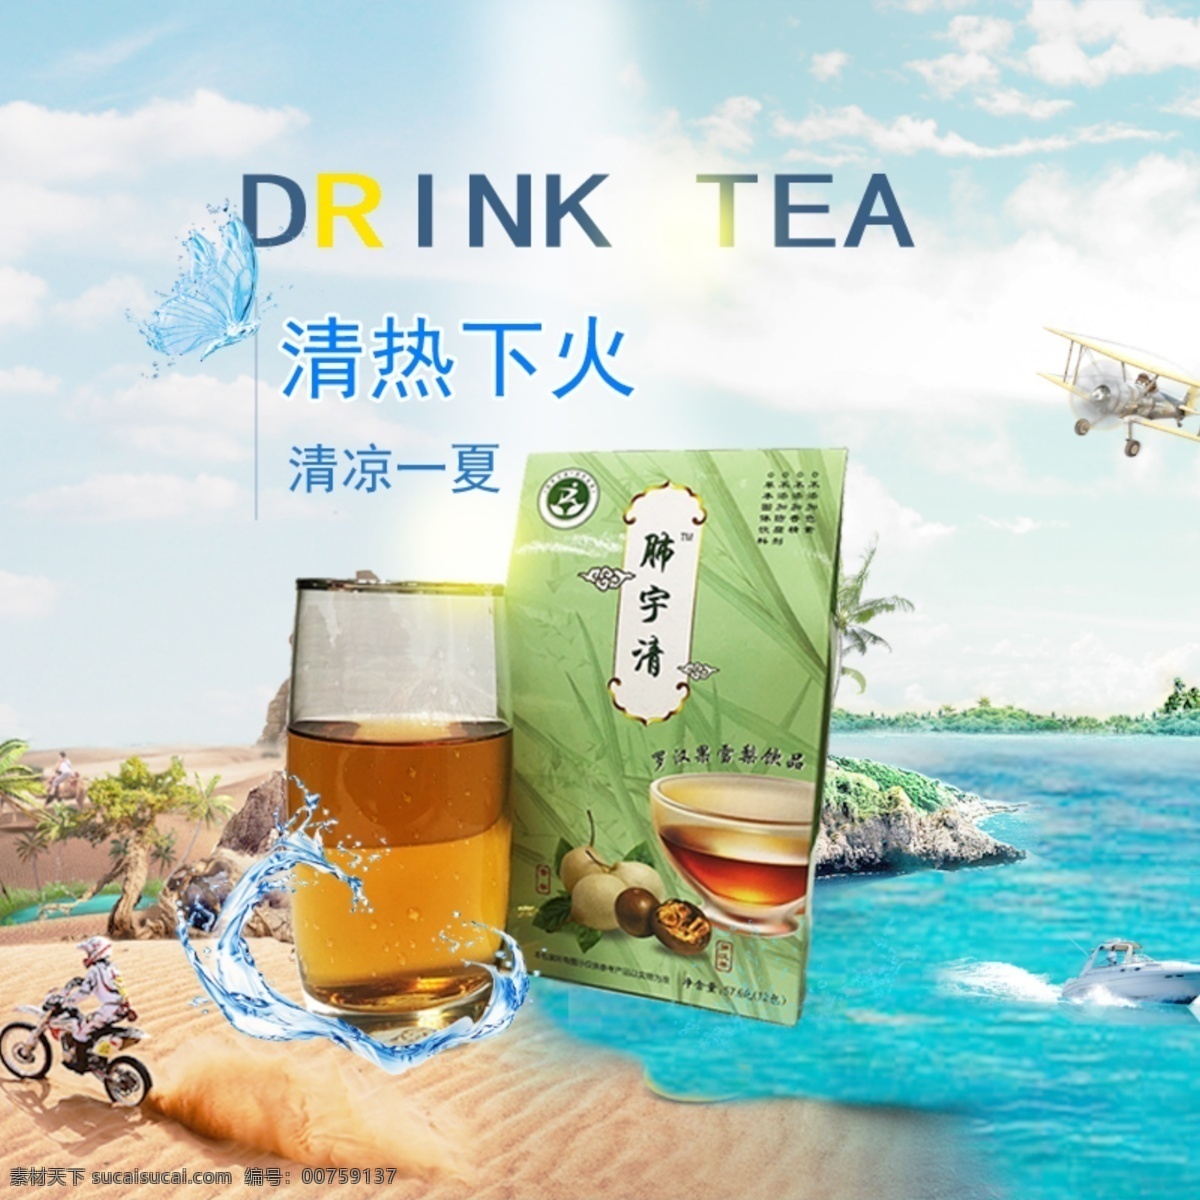 清凉 夏日 茶 海报 创意 沙滩 海洋 天空 对比 夏日清凉 清凉茶饮料 创意海报 淘宝主图 阳光沙滩